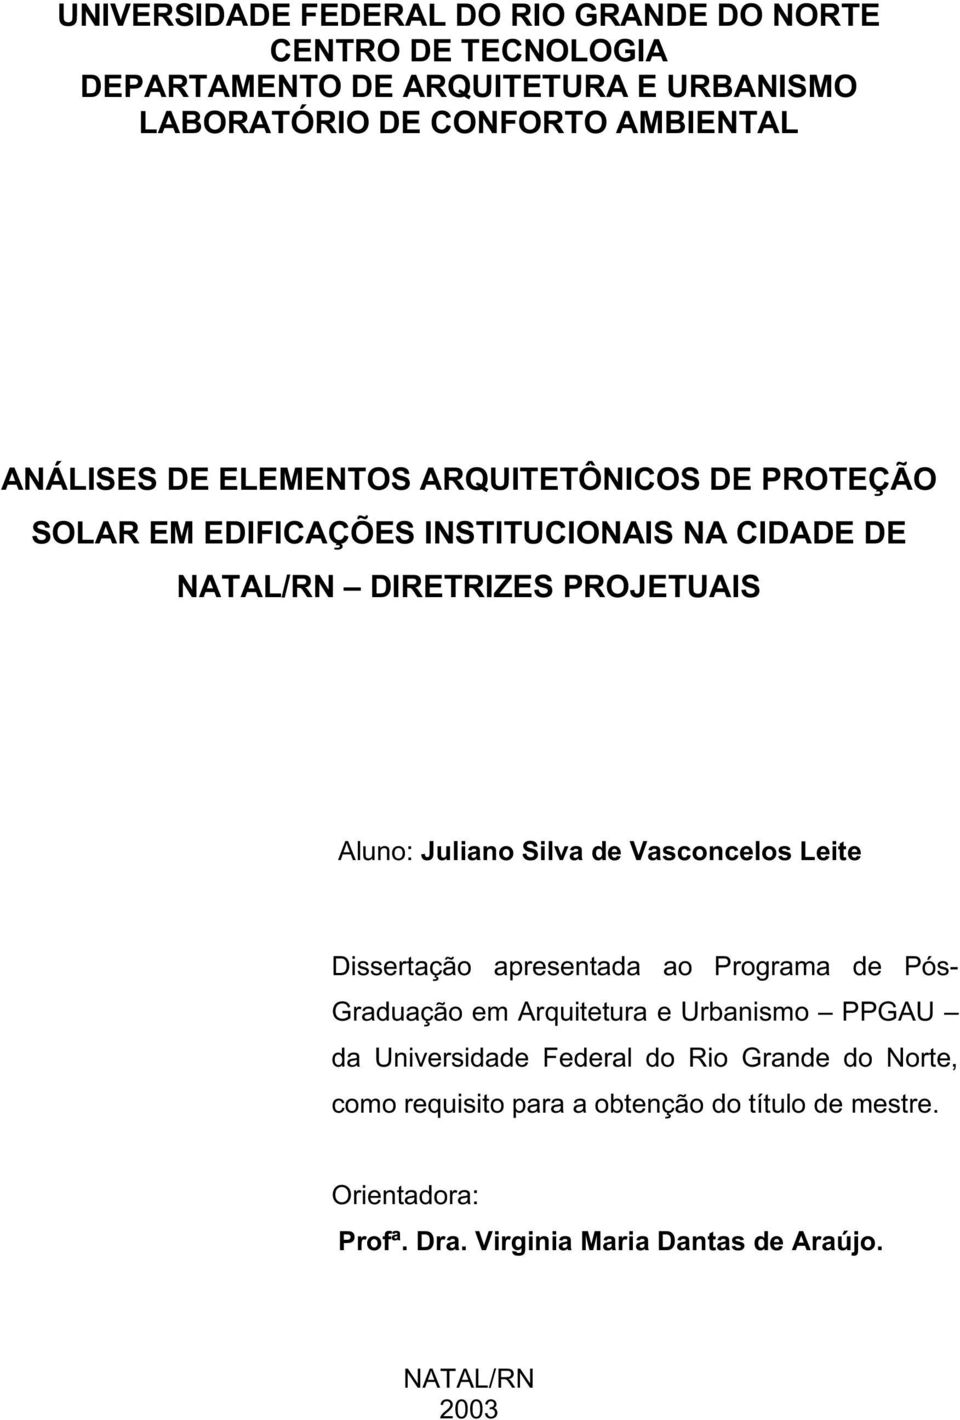 Dissertação apresentada ao Programa de Pós- Graduação em Arquitetura e Urbanismo PPGAU da Universidade Federal do Rio Grande